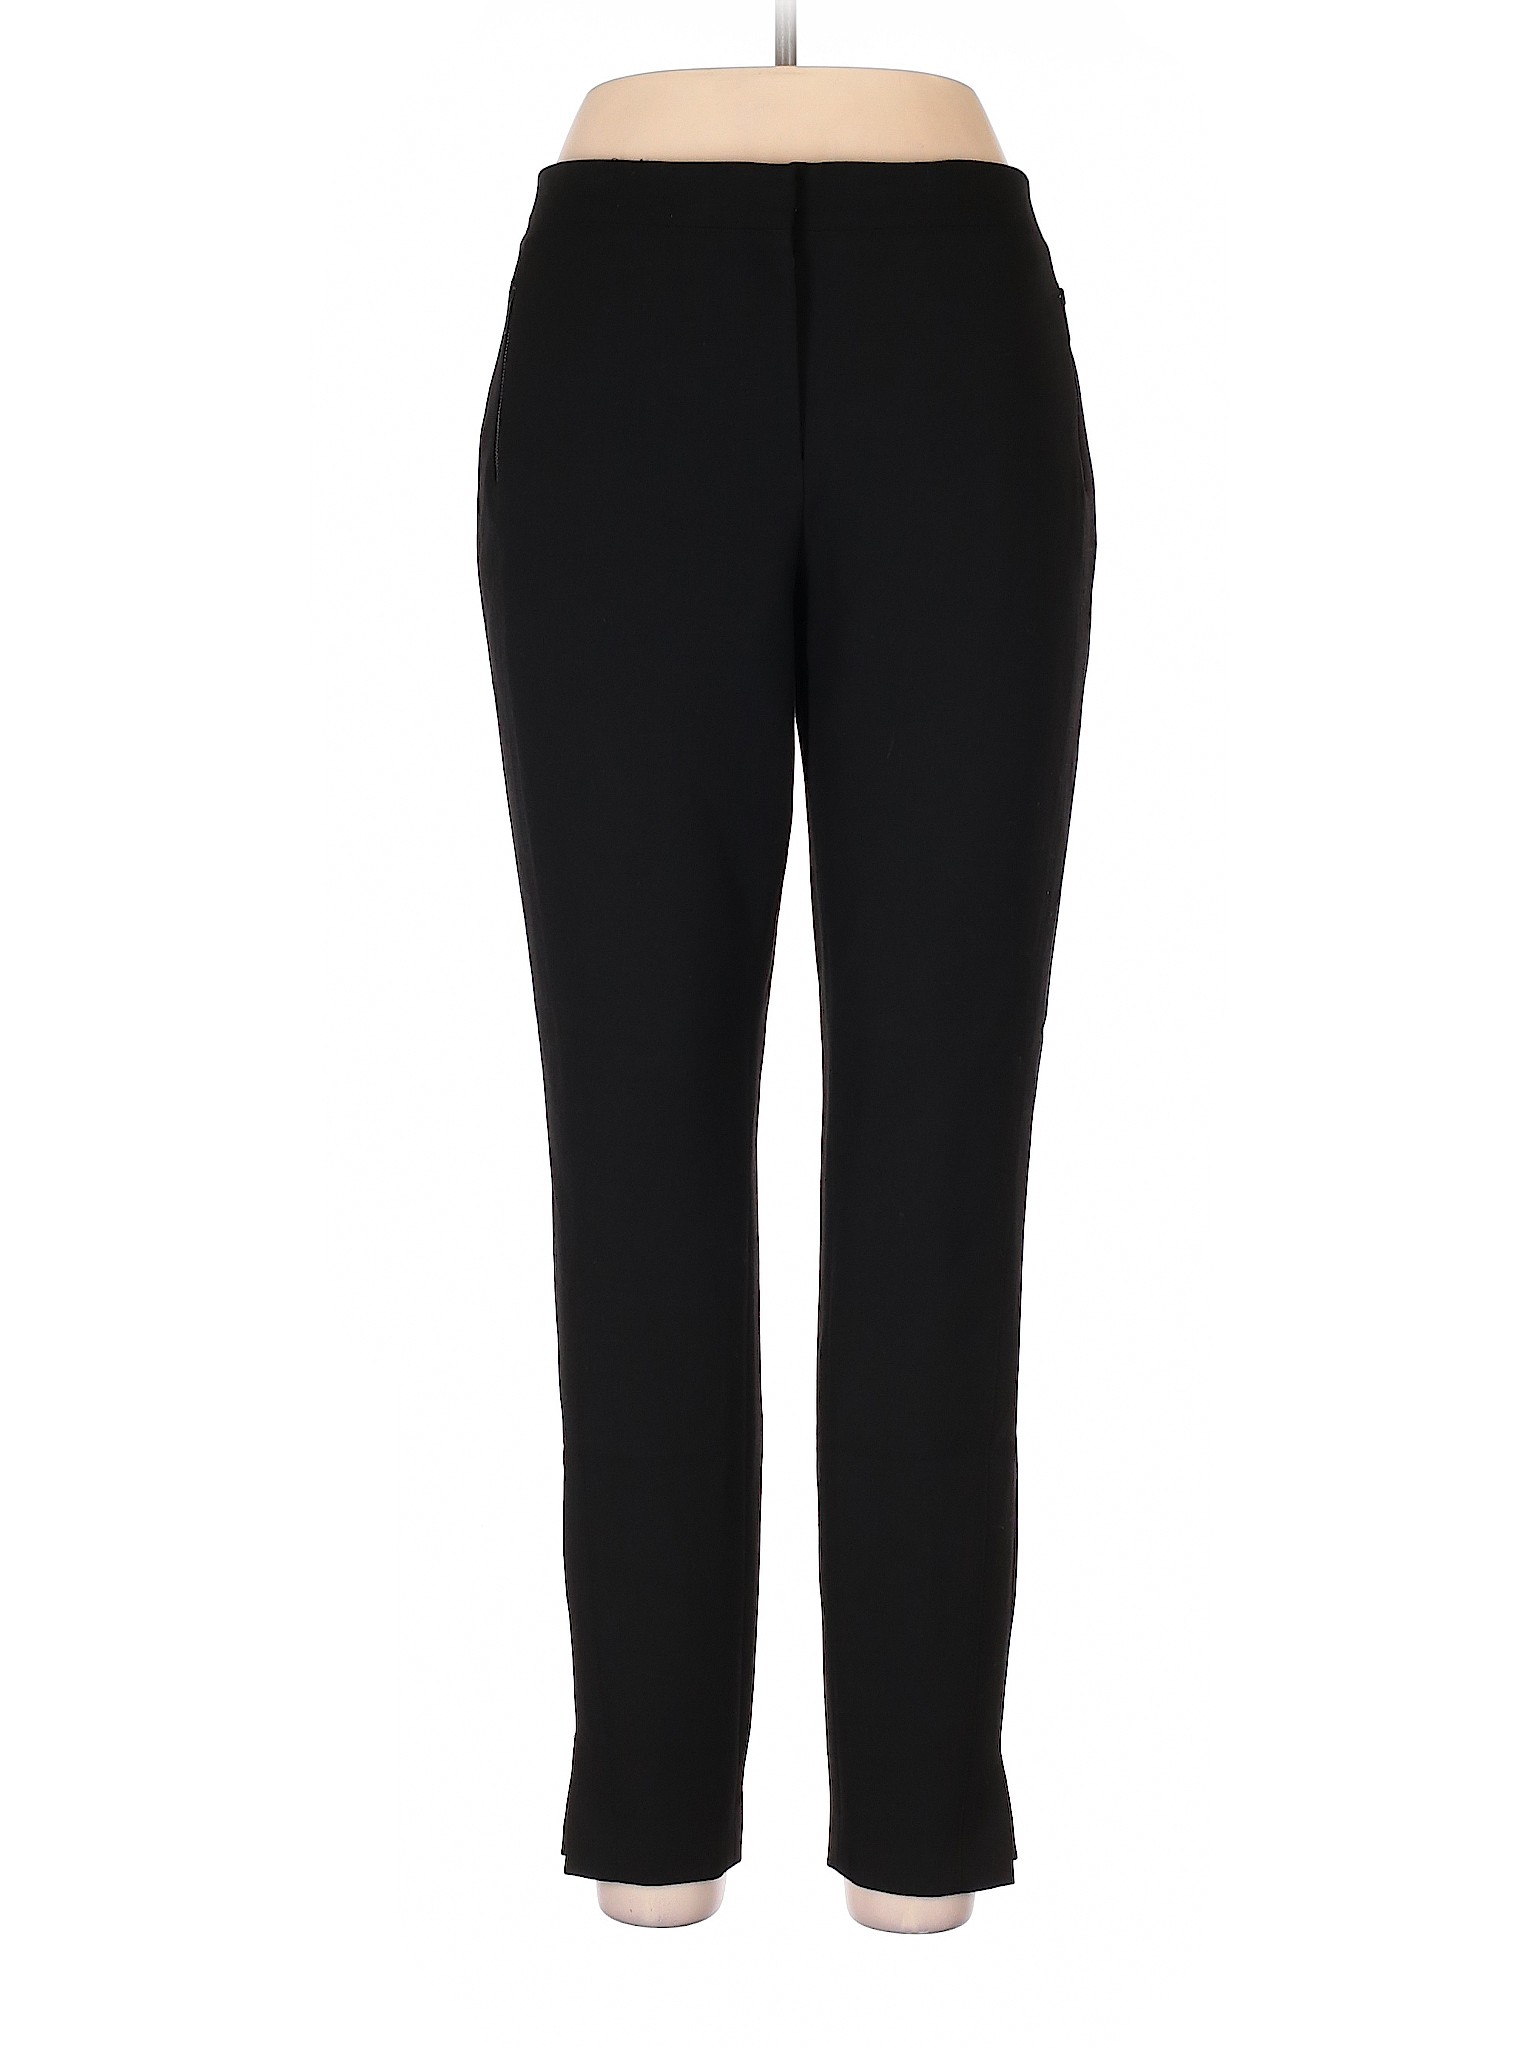 Classiques Entier Women Black Dress Pants 12 | eBay